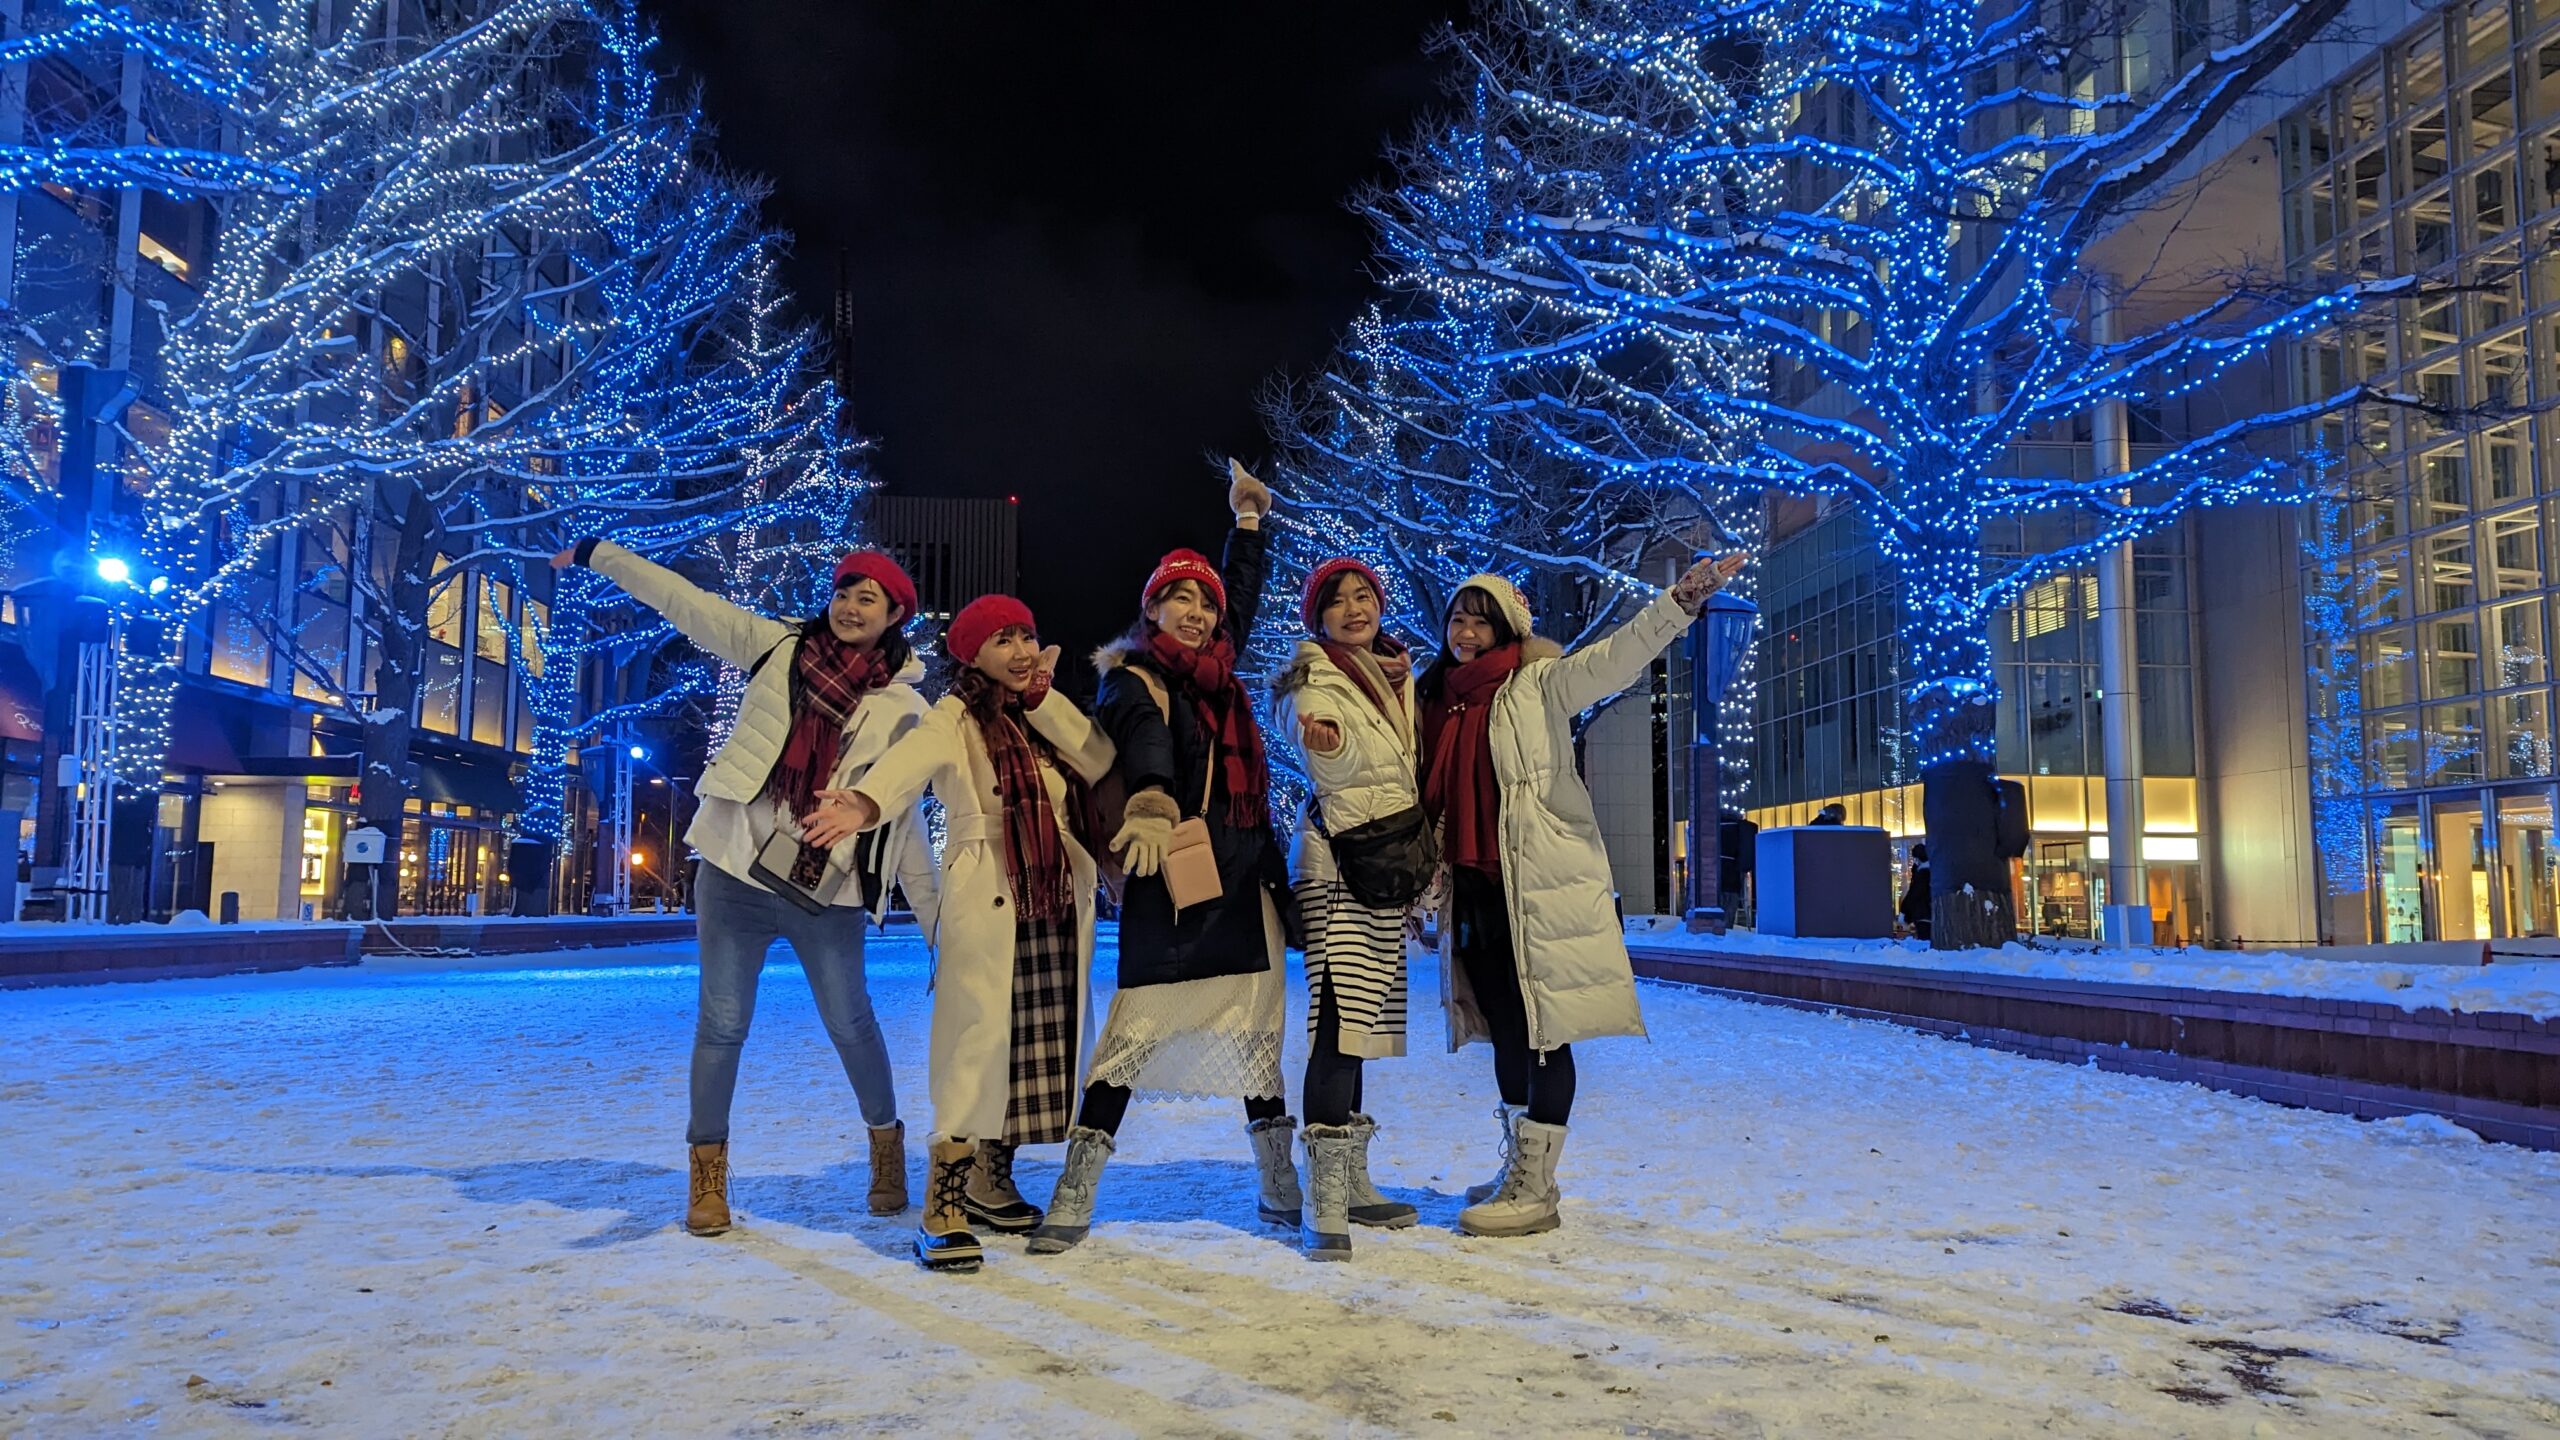 【日本活動】札幌白色燈樹節，全日本最早的聖誕燈會，相約到冰雪世界賞夢幻燈海